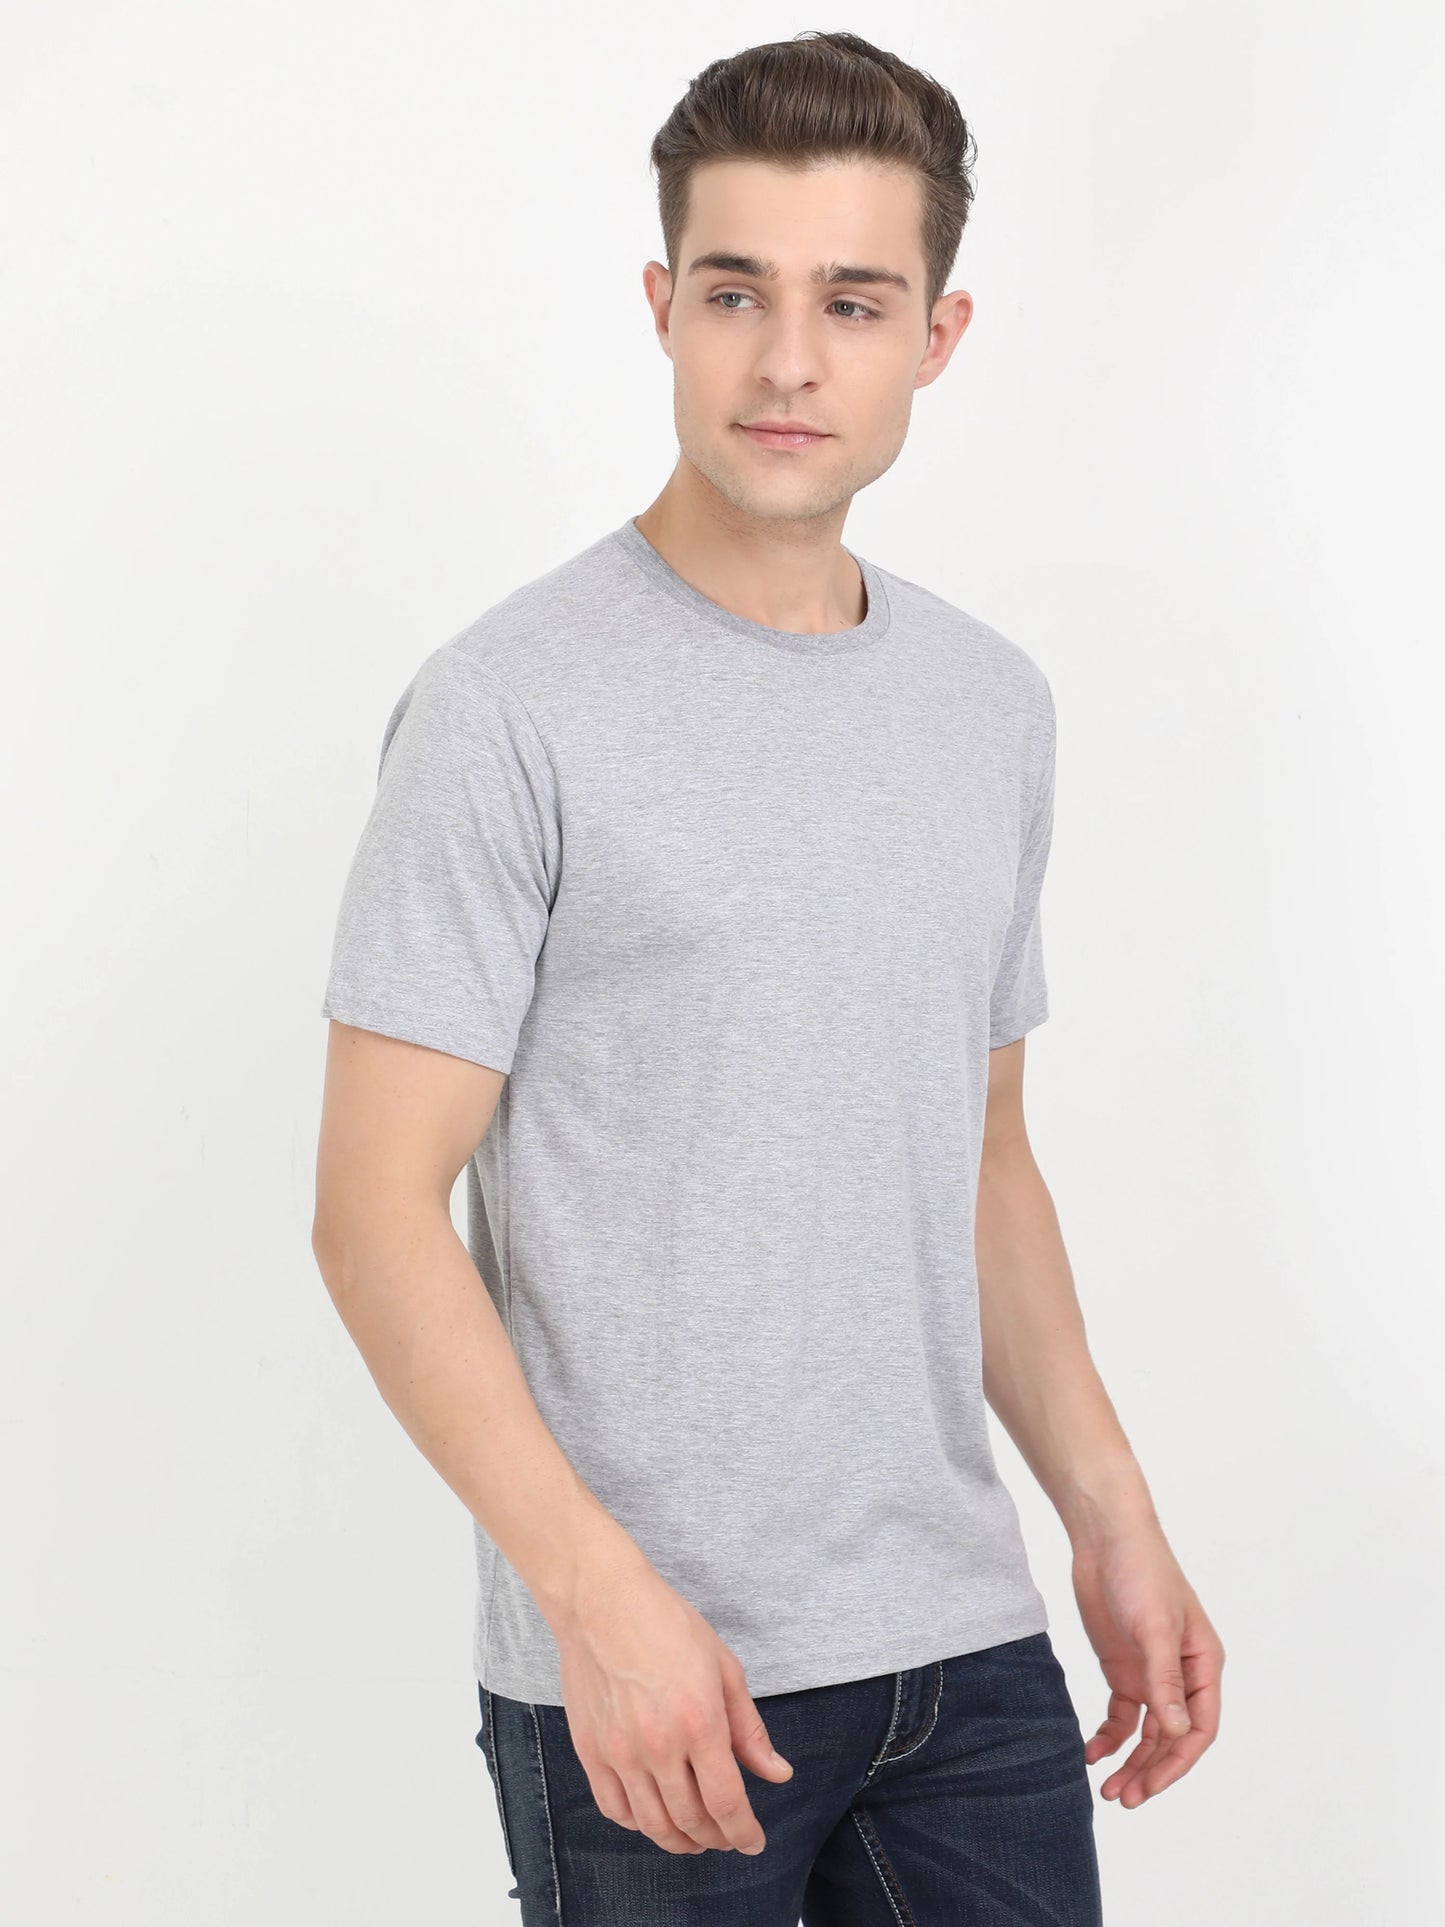 Men's Cotton Plain Round Neck Half Sleeve Grey Melange Color T-Shirt